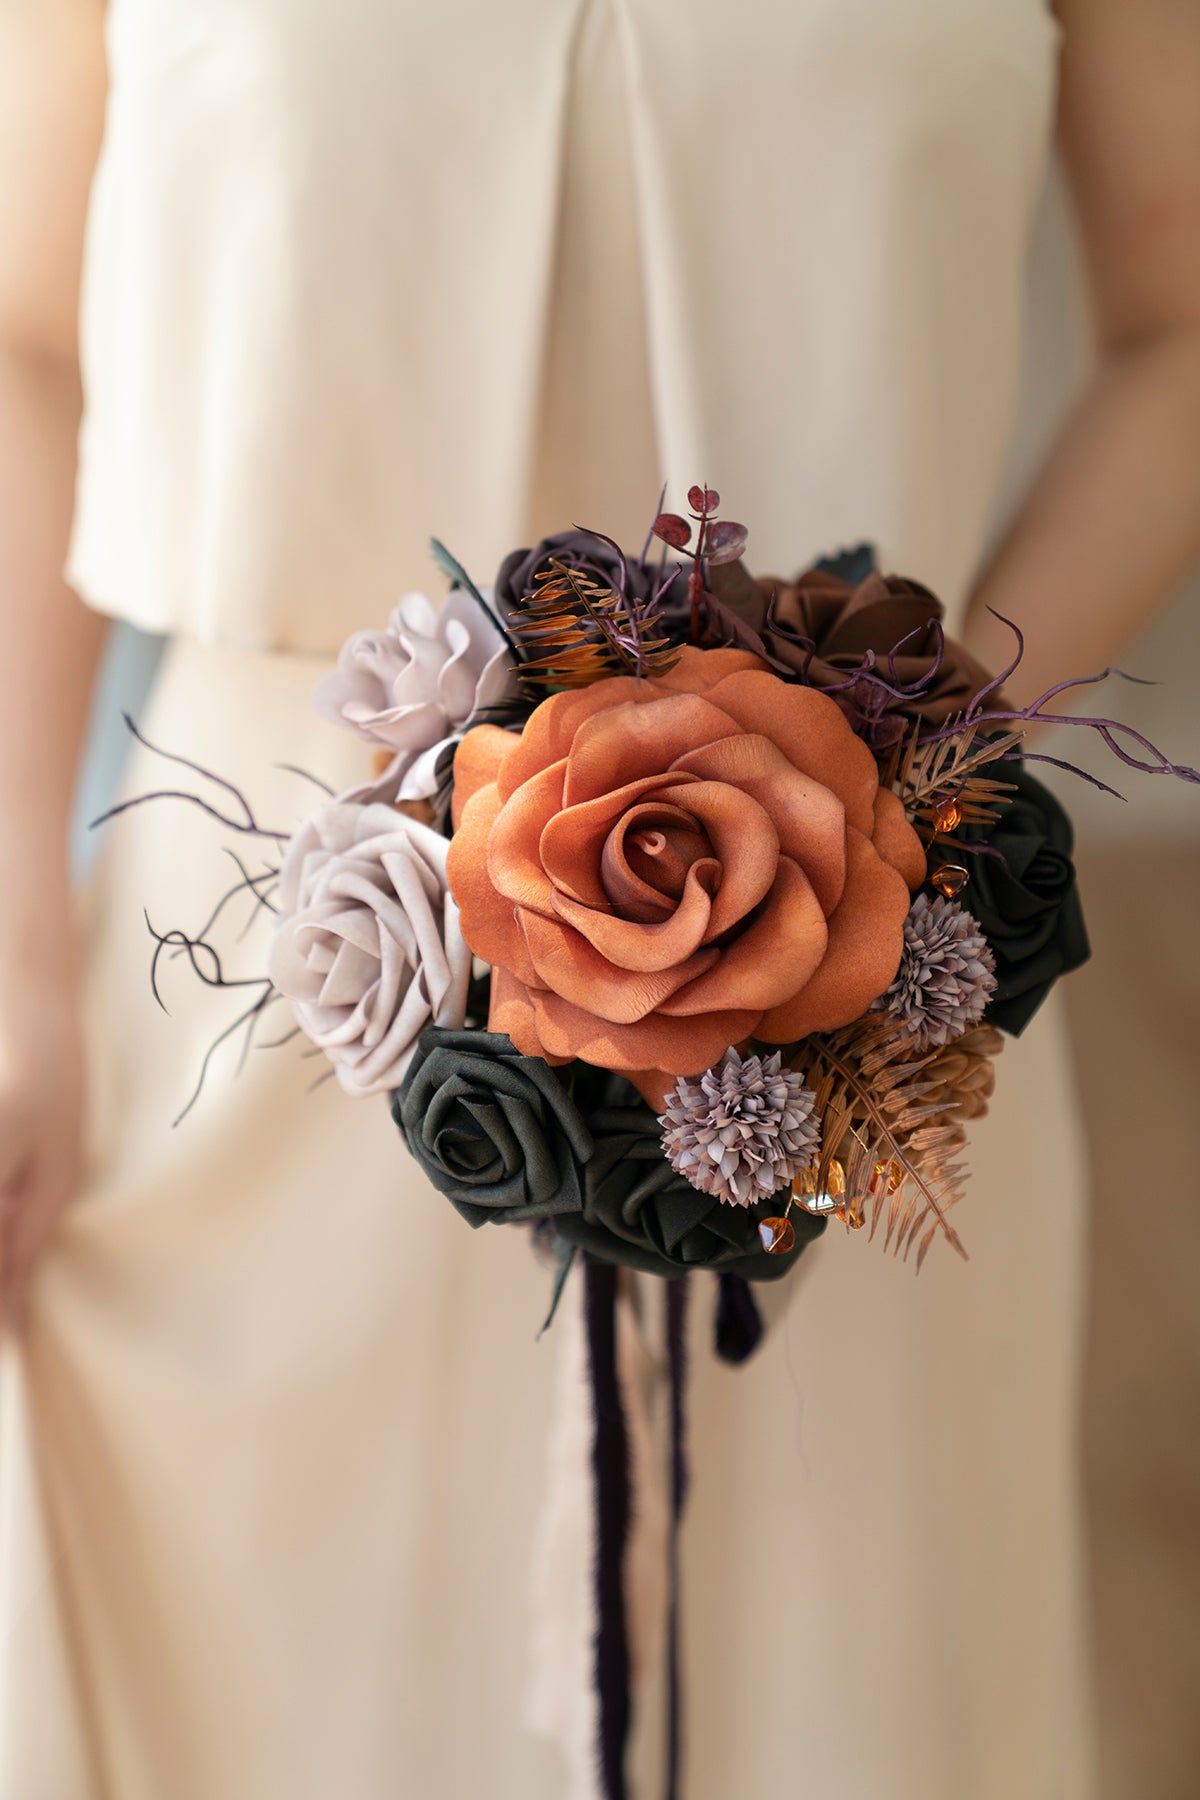 Round Bridesmaid Bouquets in Twilight Purple & Harvest Orange